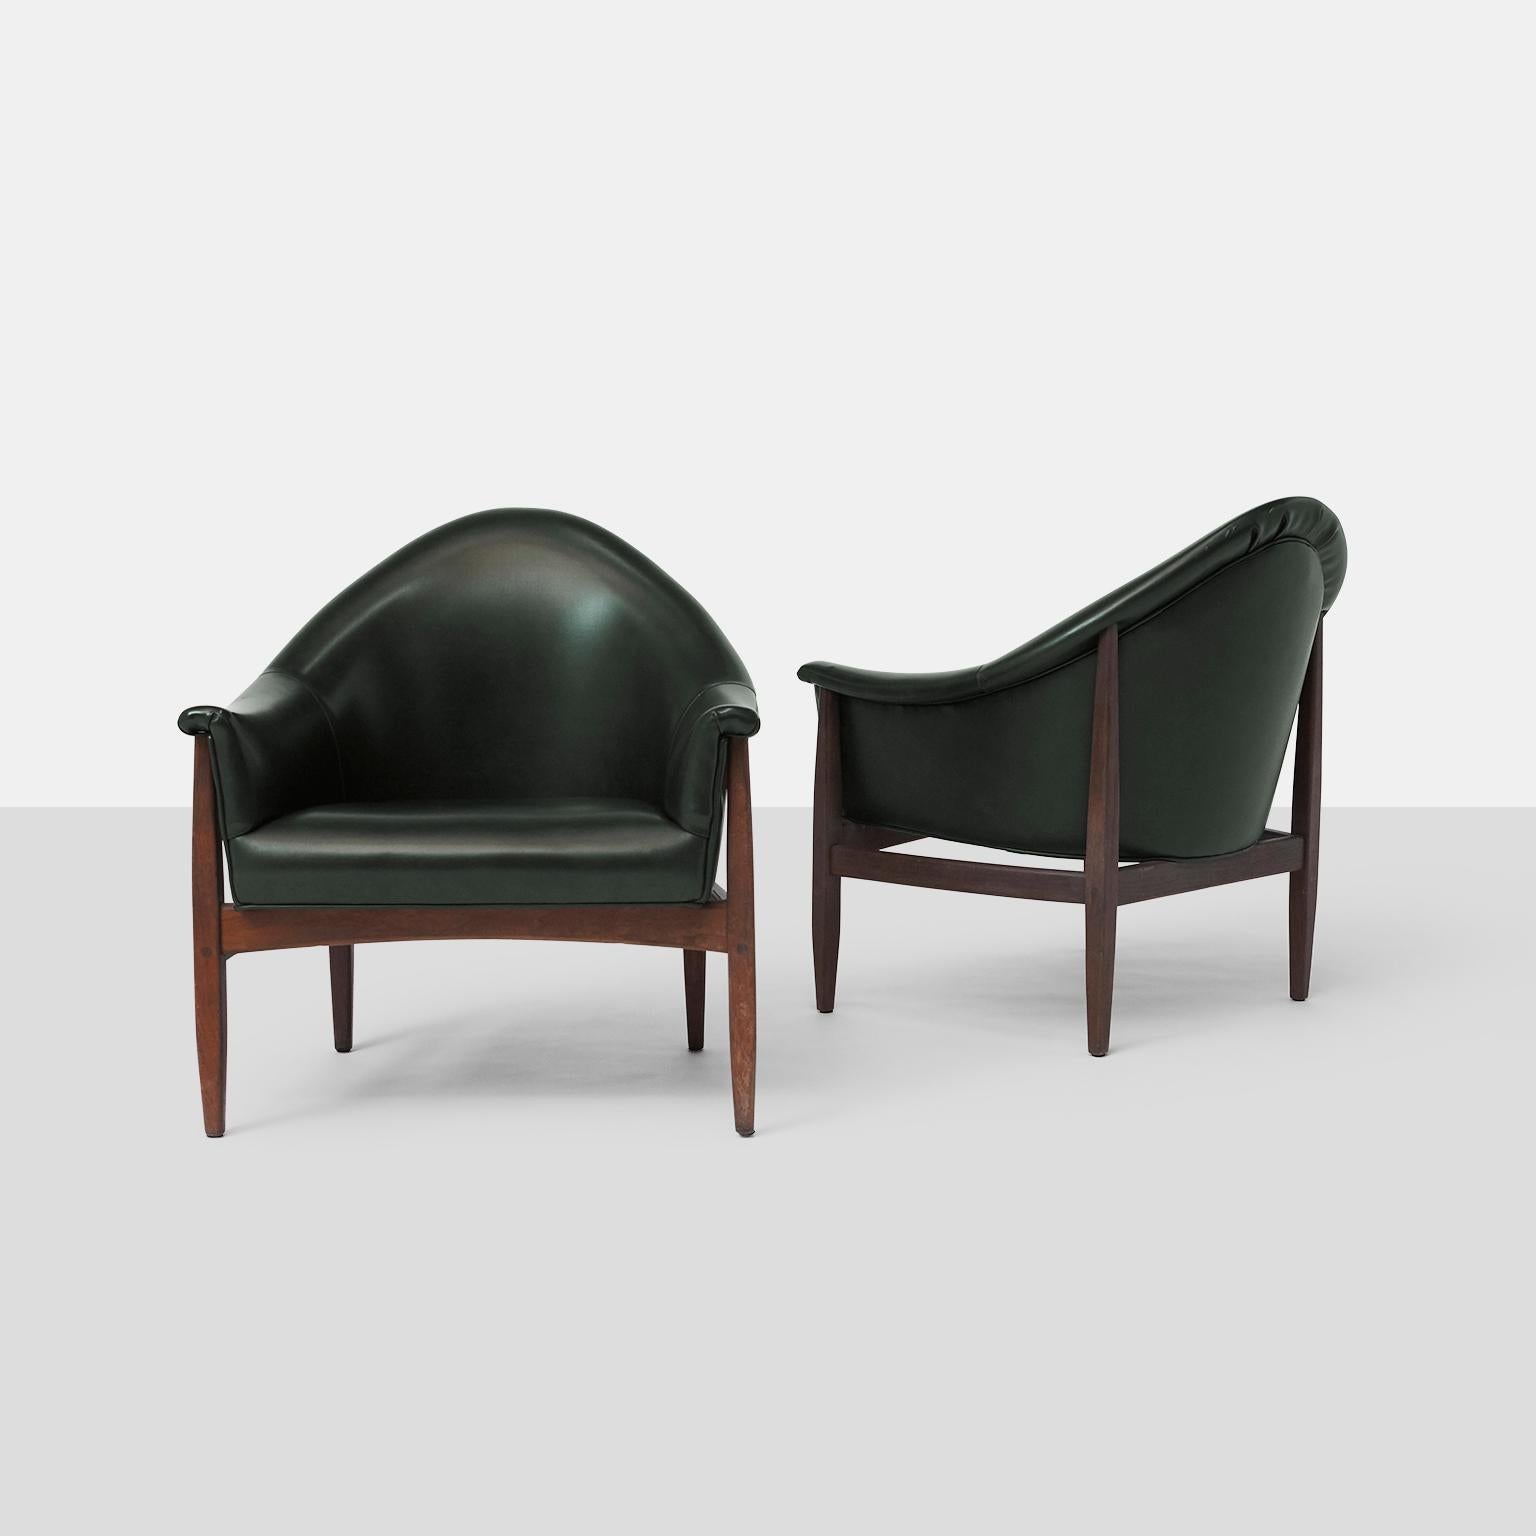 Ein Paar Clubsessel mit runder Rückenlehne von Milo Baughman für Thayer Coggin. Ein seltener, früher Stil, der den Beginn ihrer langen Collaboration markiert. 
Der Rahmen aus Nussbaumholz trägt eine niedrige Sitzfläche und ist mit dunkelgrünem Vinyl